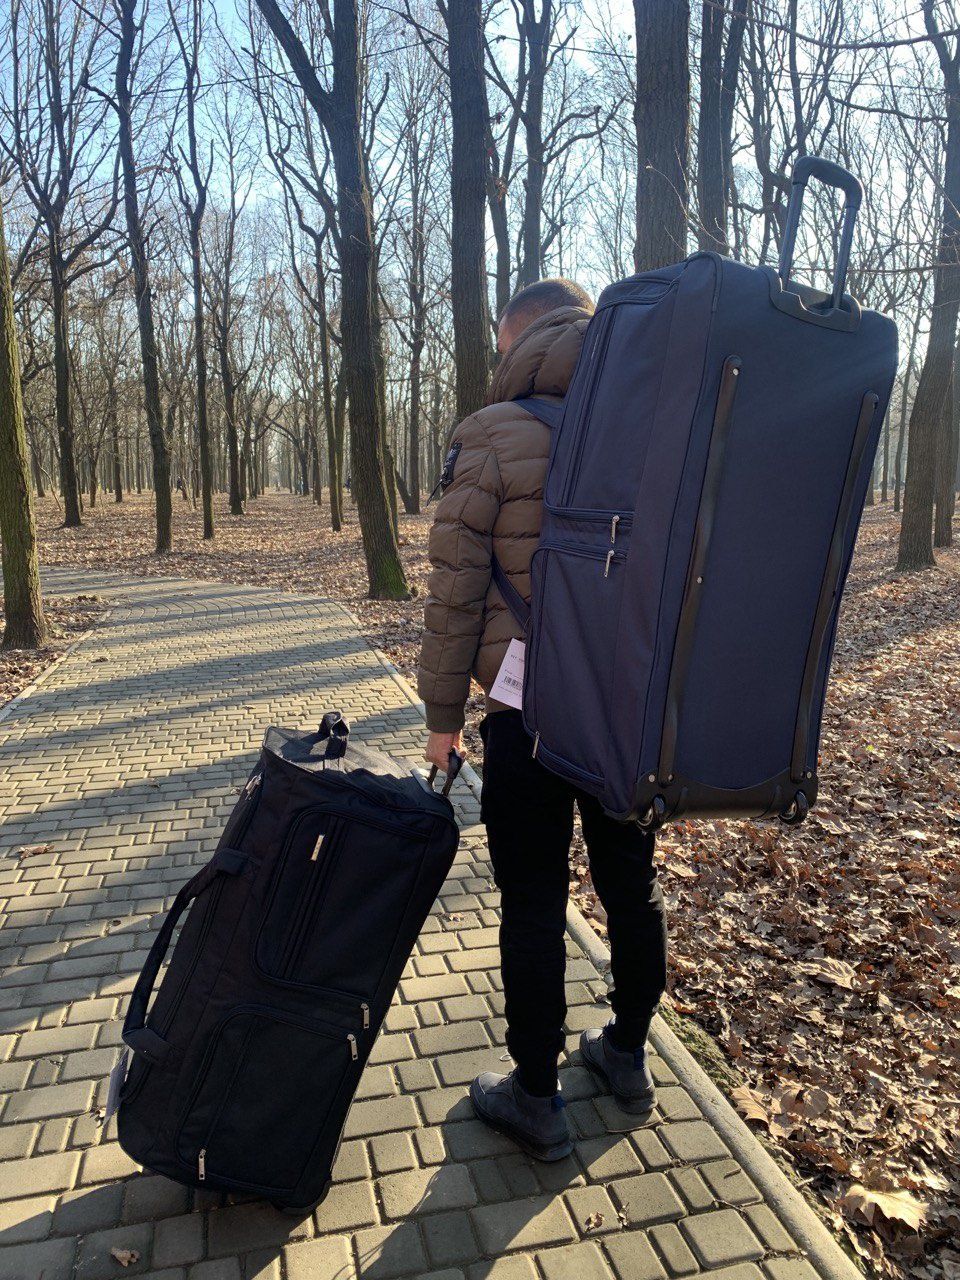 Сумка - чемодан огромная великан 140 литров Париж! Акция